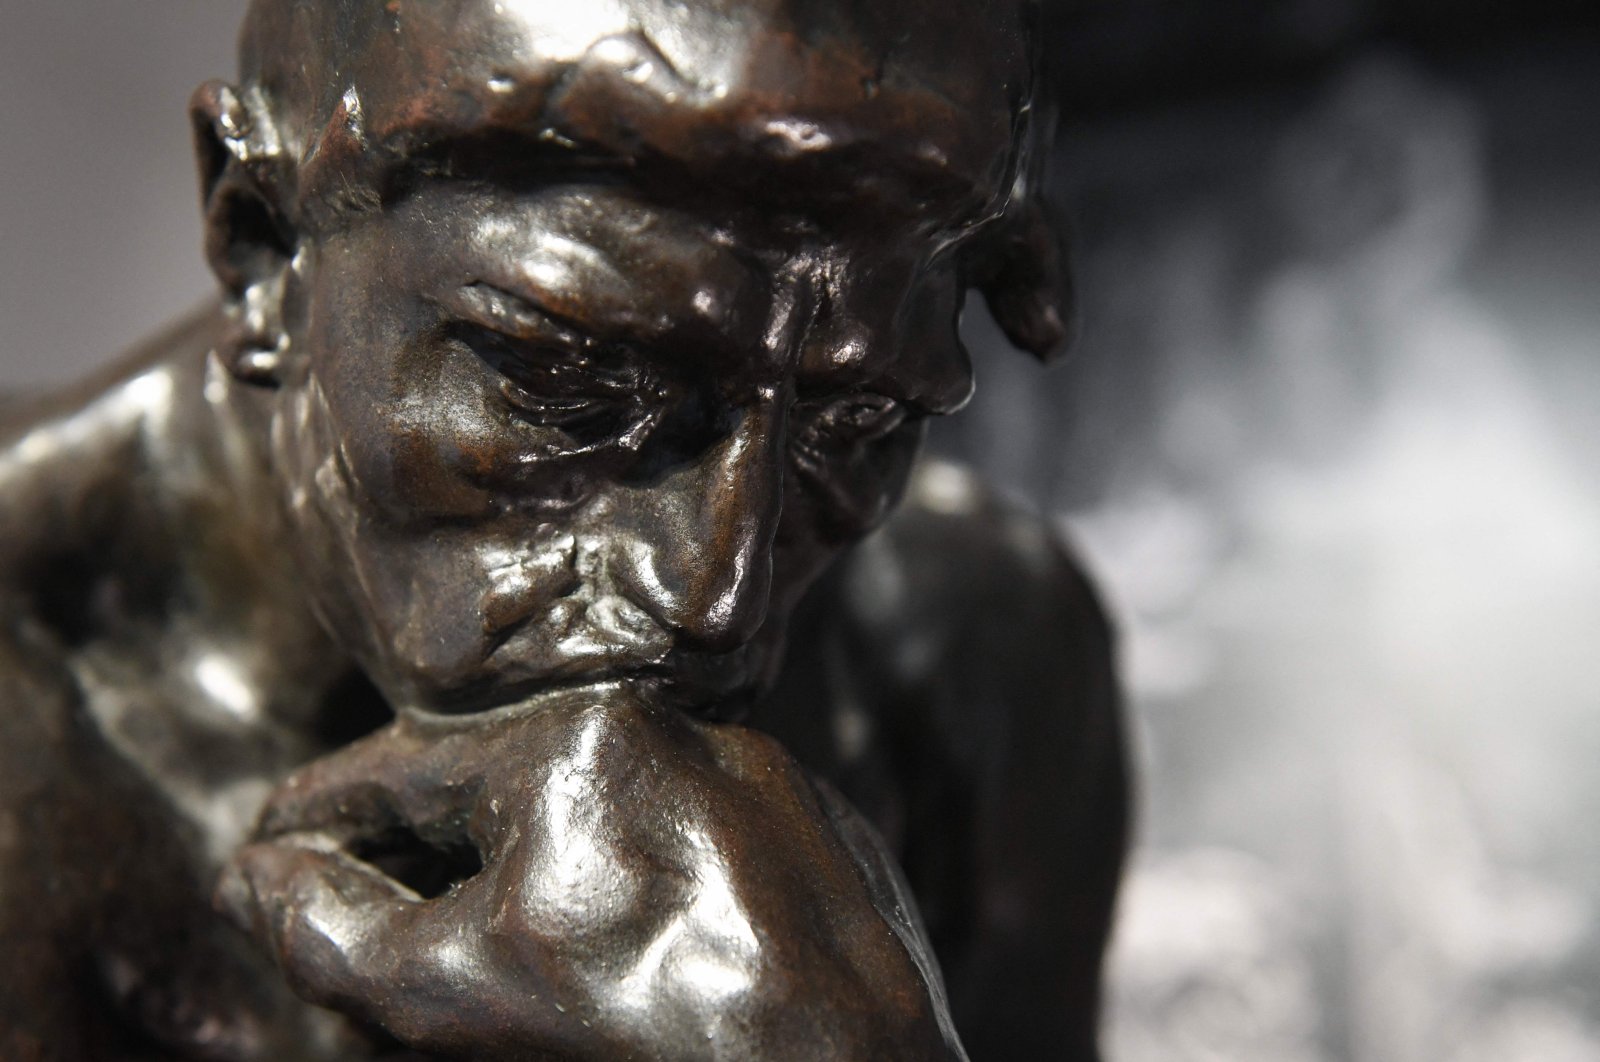 Pemeran anumerta Rodin’s ‘The Thinker’ dijual seharga $ 11,4 juta di Paris